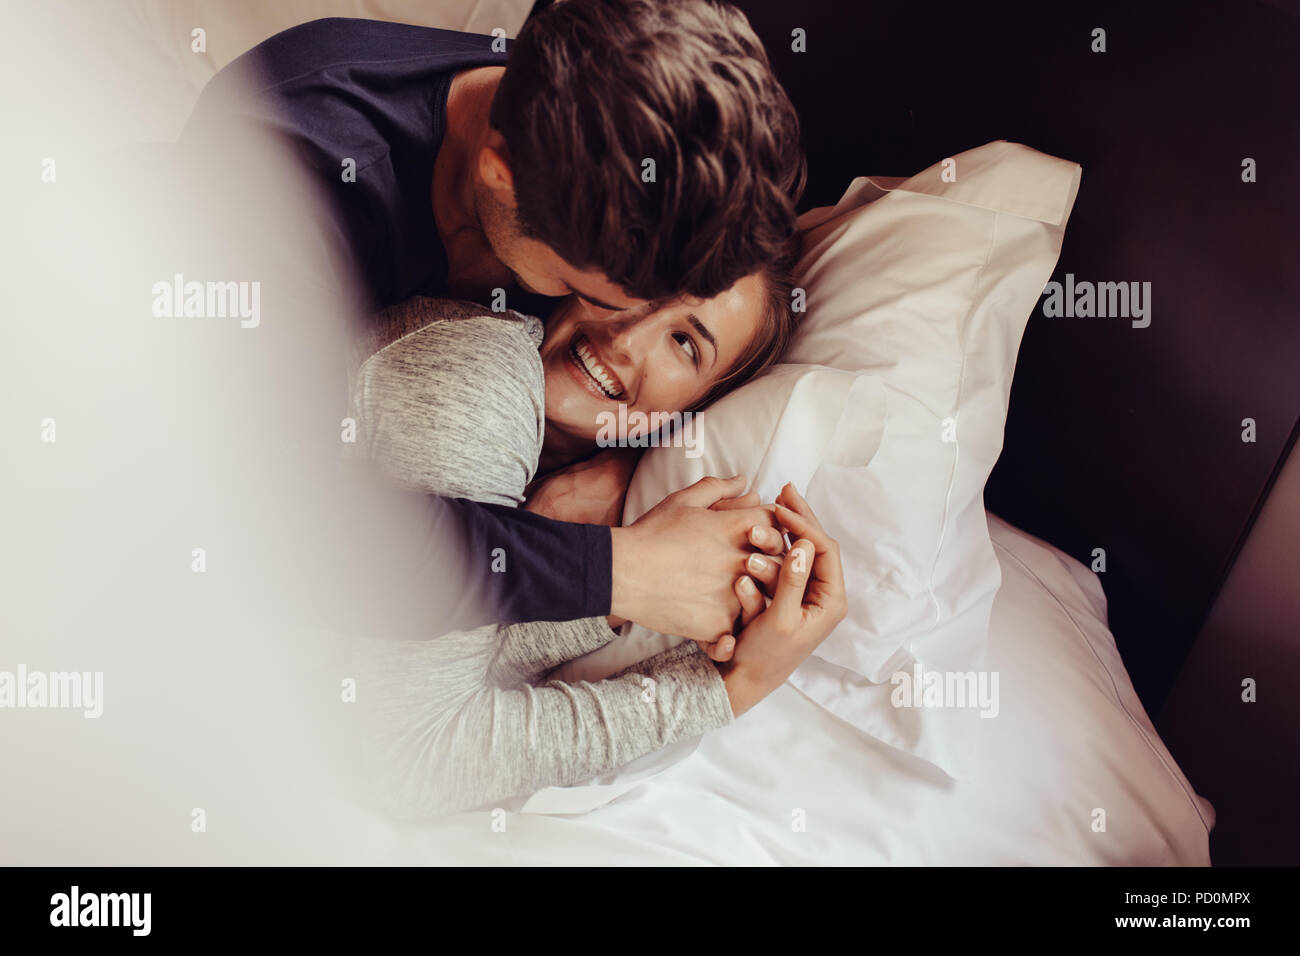 Romantische junge Paar in Liebe liegend auf dem Bett. Schönes Paar im Bett mit einem Lächeln. Stockfoto